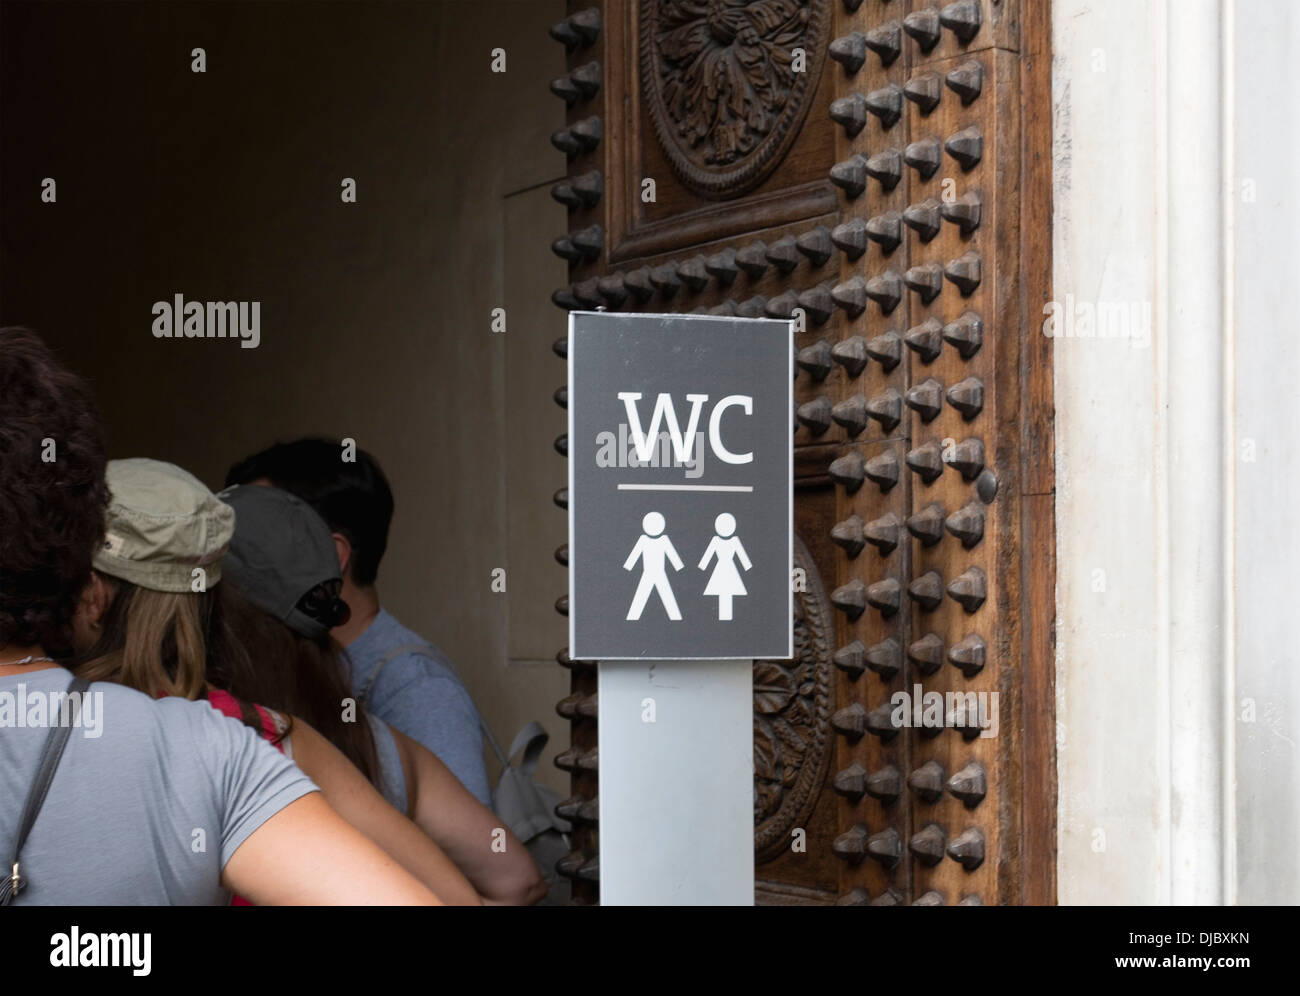 Öffentliche Toilette in Florenz, Italien Stockfotografie - Alamy